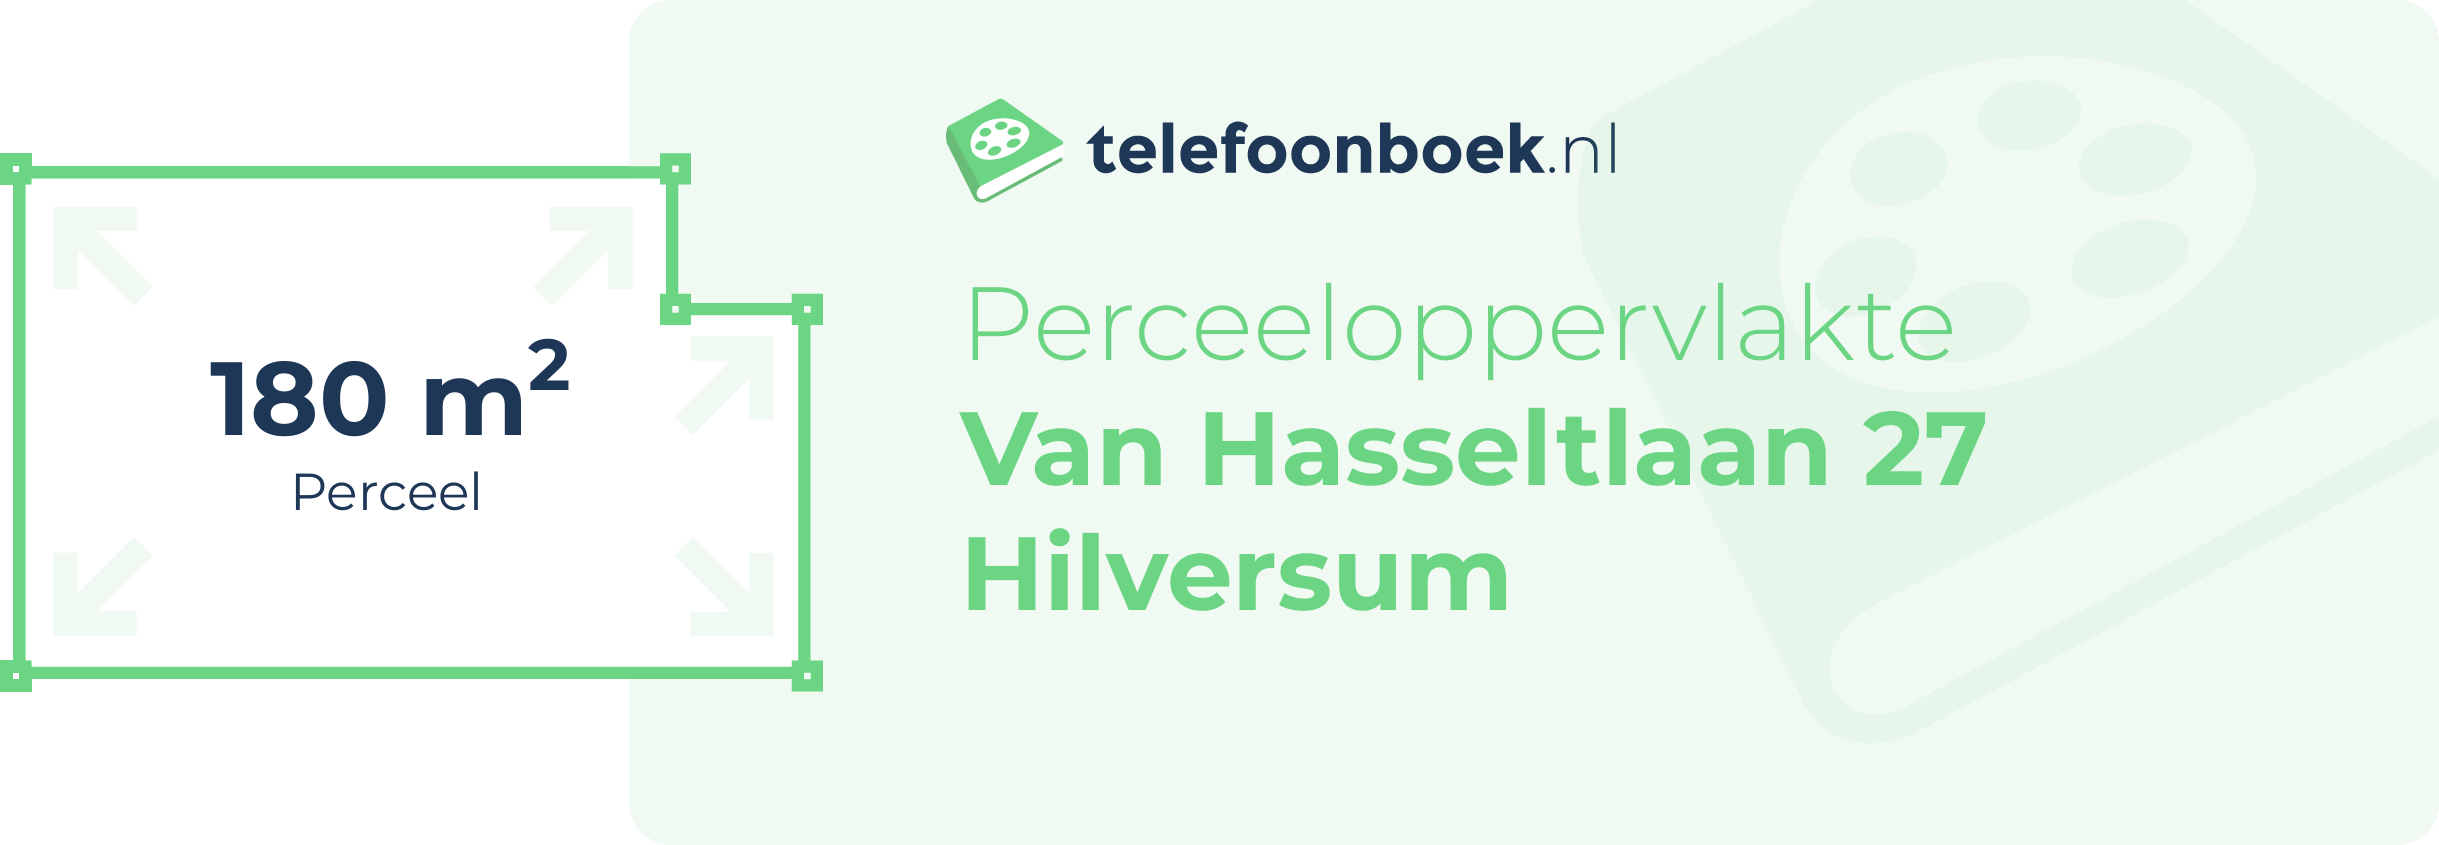 Perceeloppervlakte Van Hasseltlaan 27 Hilversum